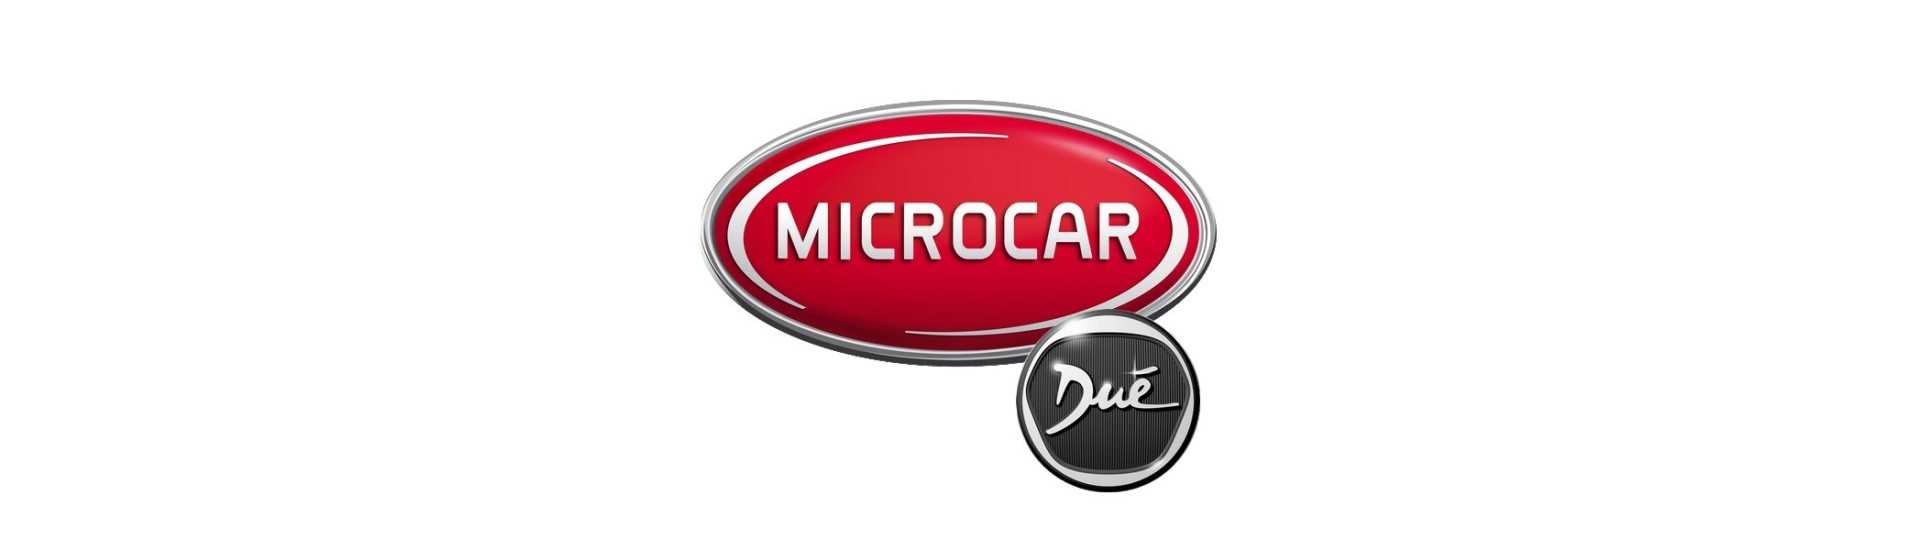 Radar und Rückkameras besten Preis Auto ohne Lizenz Microcar Dué